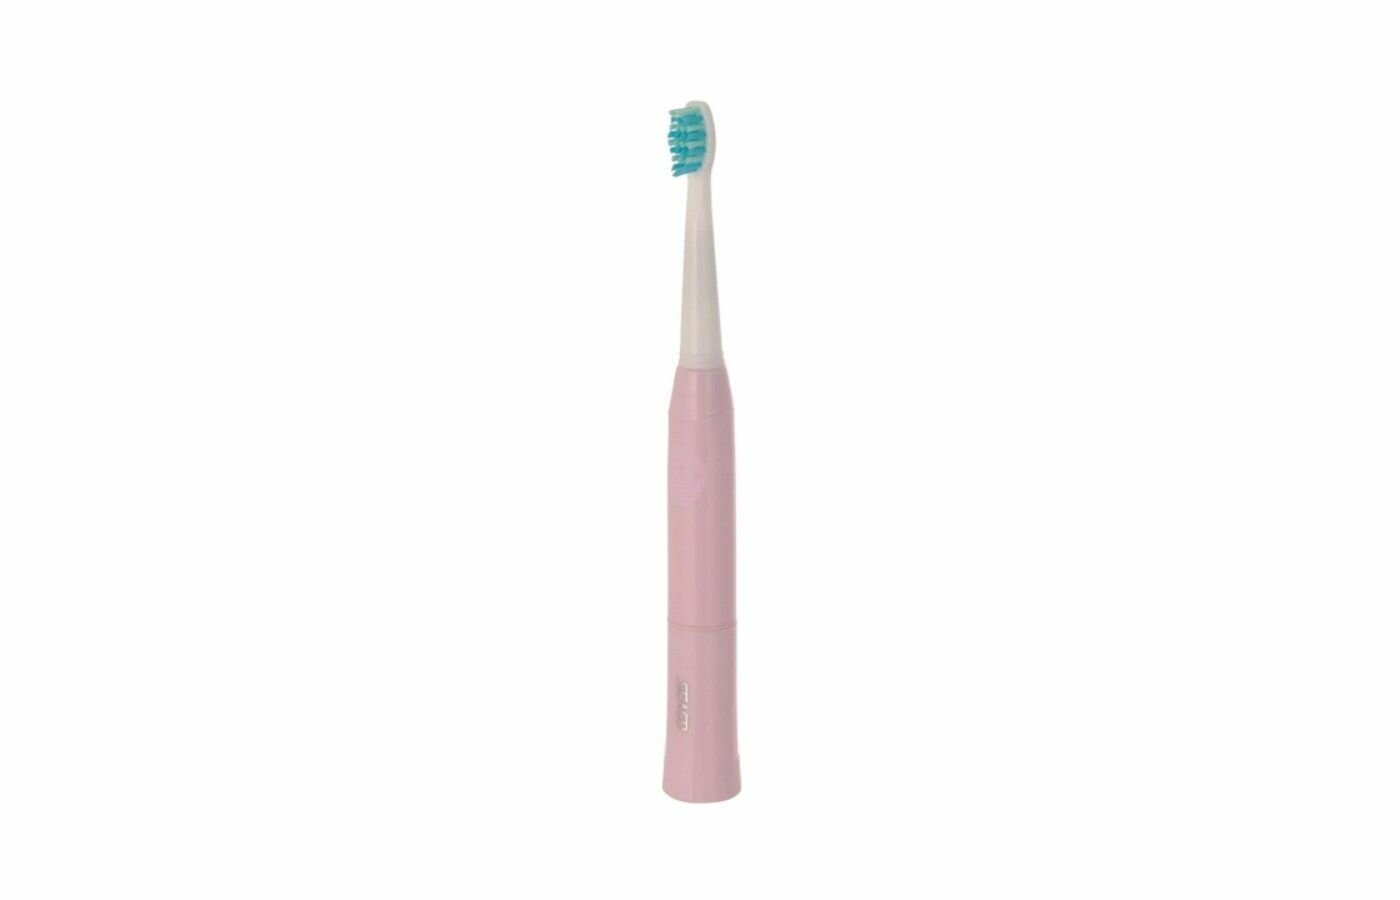 Зубная щетка Seago 503 Pink